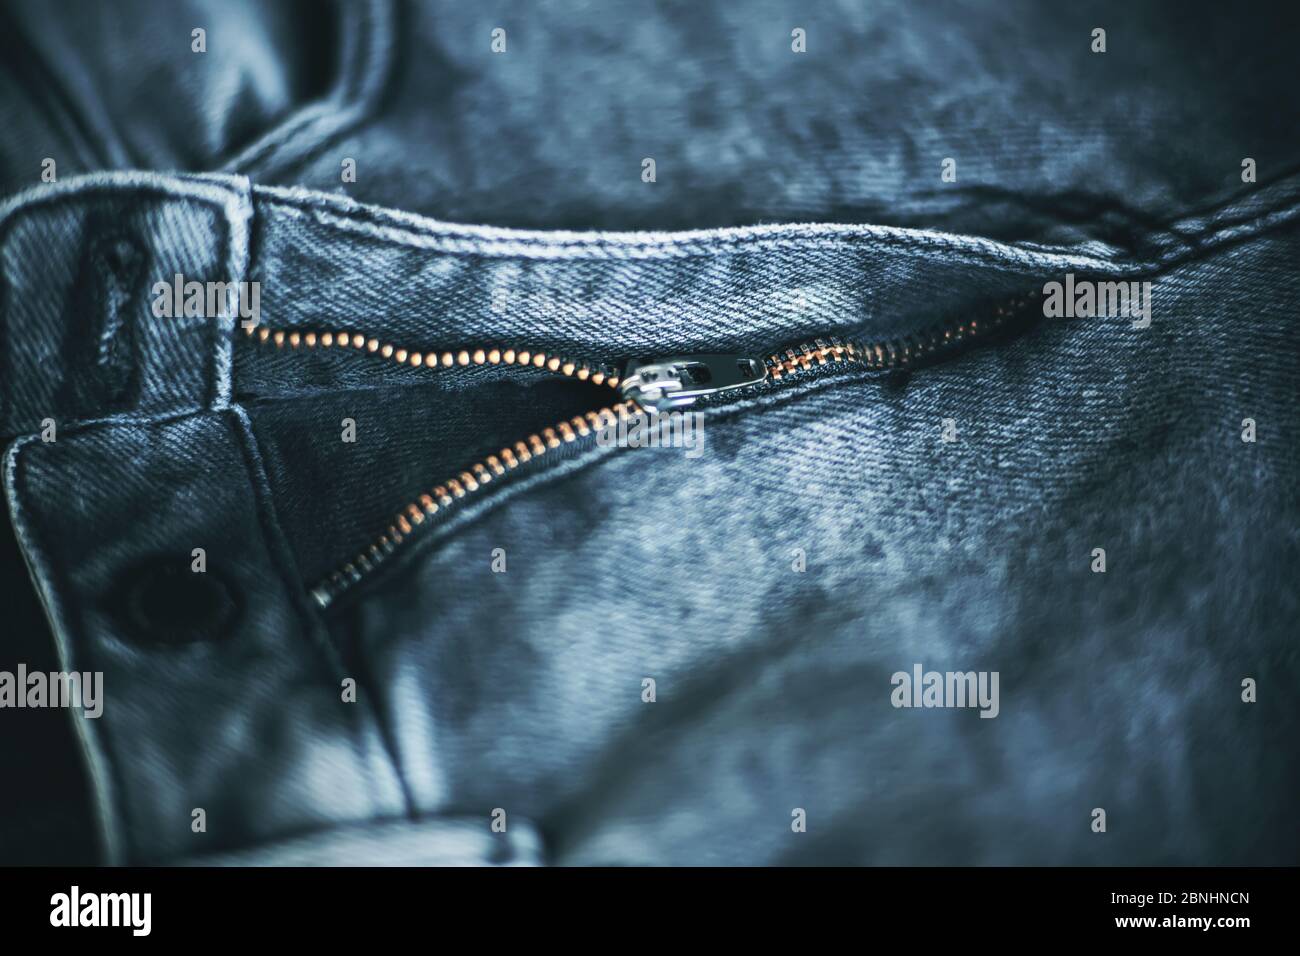 La mosca è aperta su un elegante jeans nero fatto di tessuto grezzo. Stile giovanile. Foto Stock